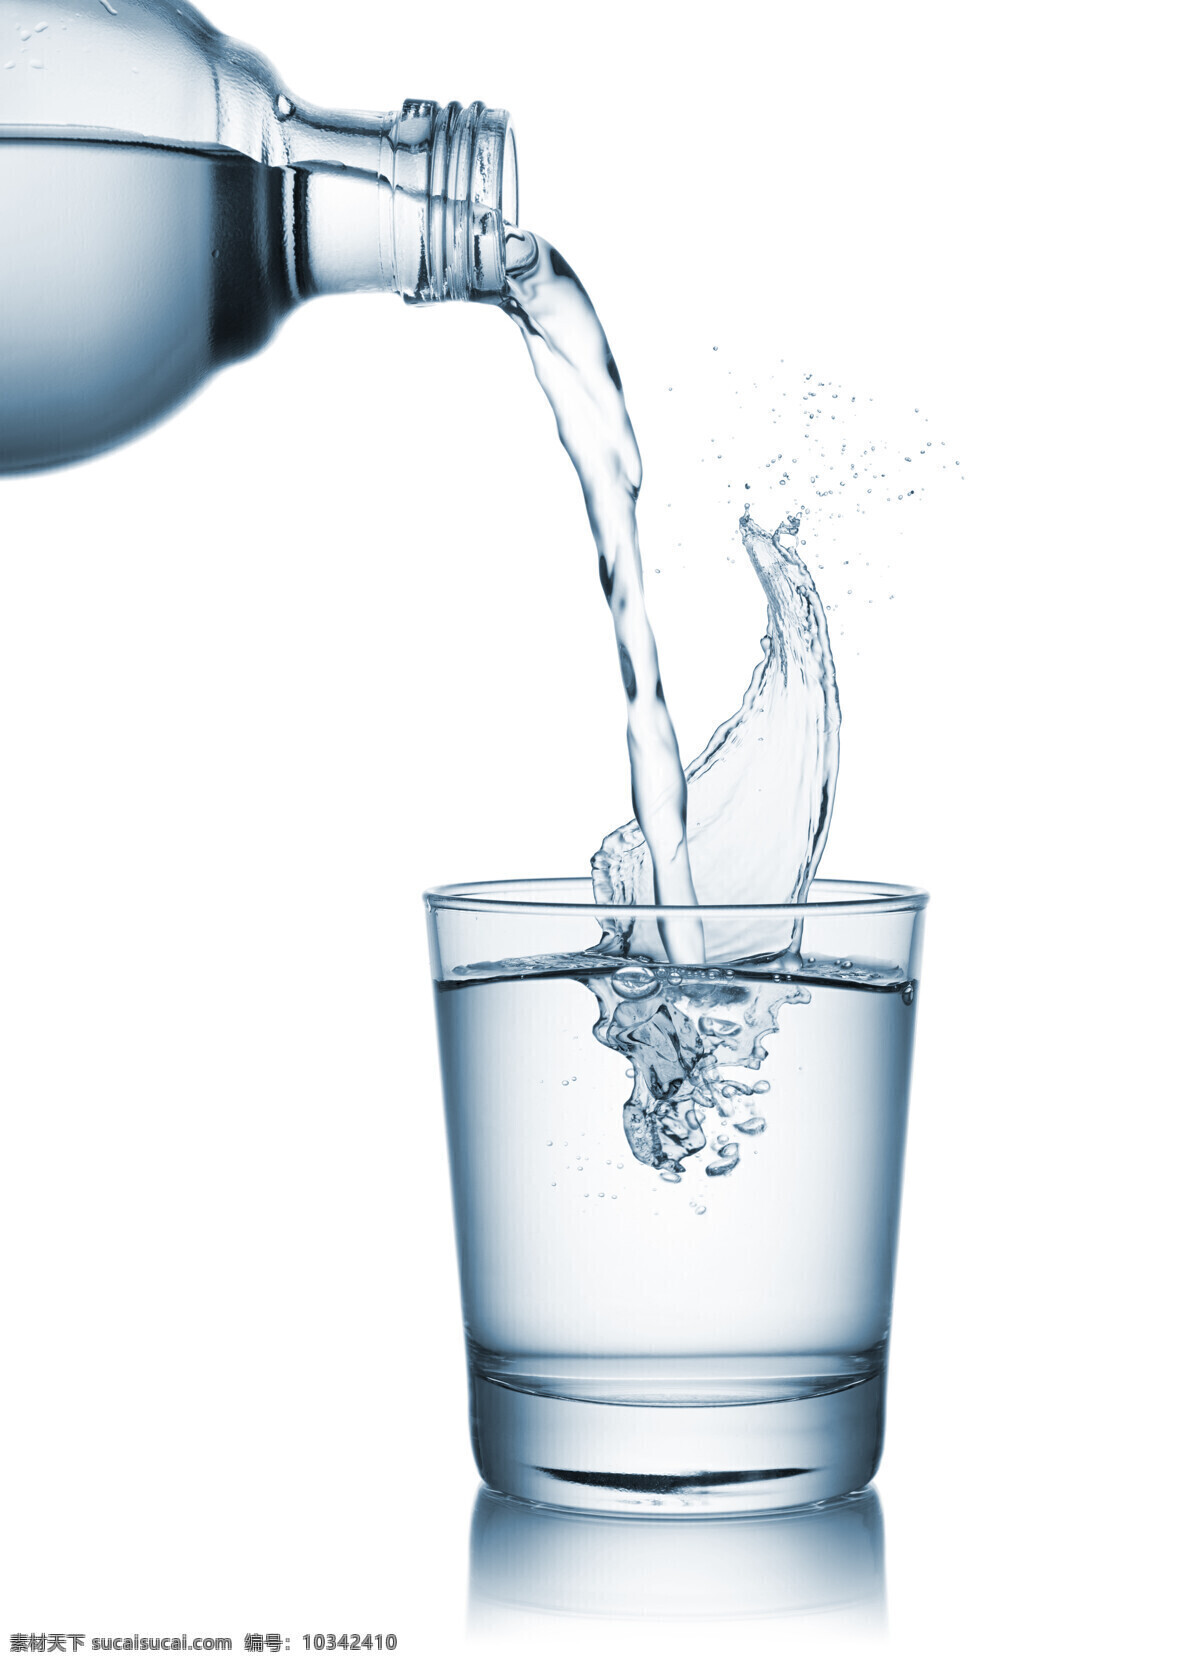 倒水 纯净水 饮用水 水 饮料 无商标 水素材 矿泉水 水广告 生活百科 餐饮美食